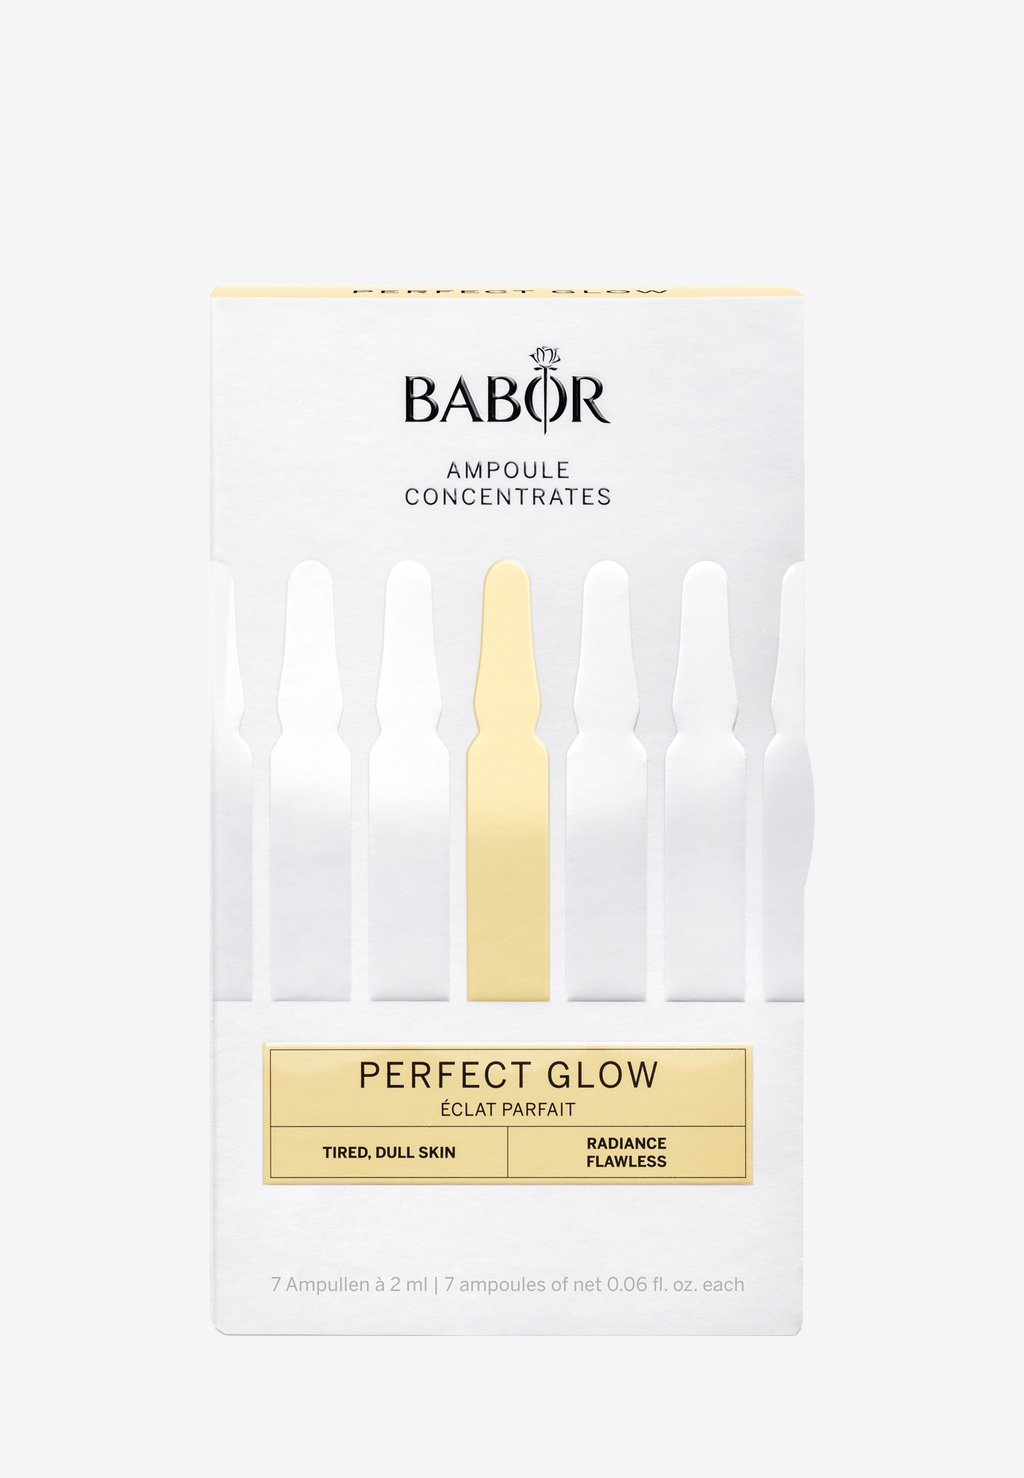 Набор для ухода за кожей Perfect Glow BABOR набор для ухода за кожей лица и тела alma k glow